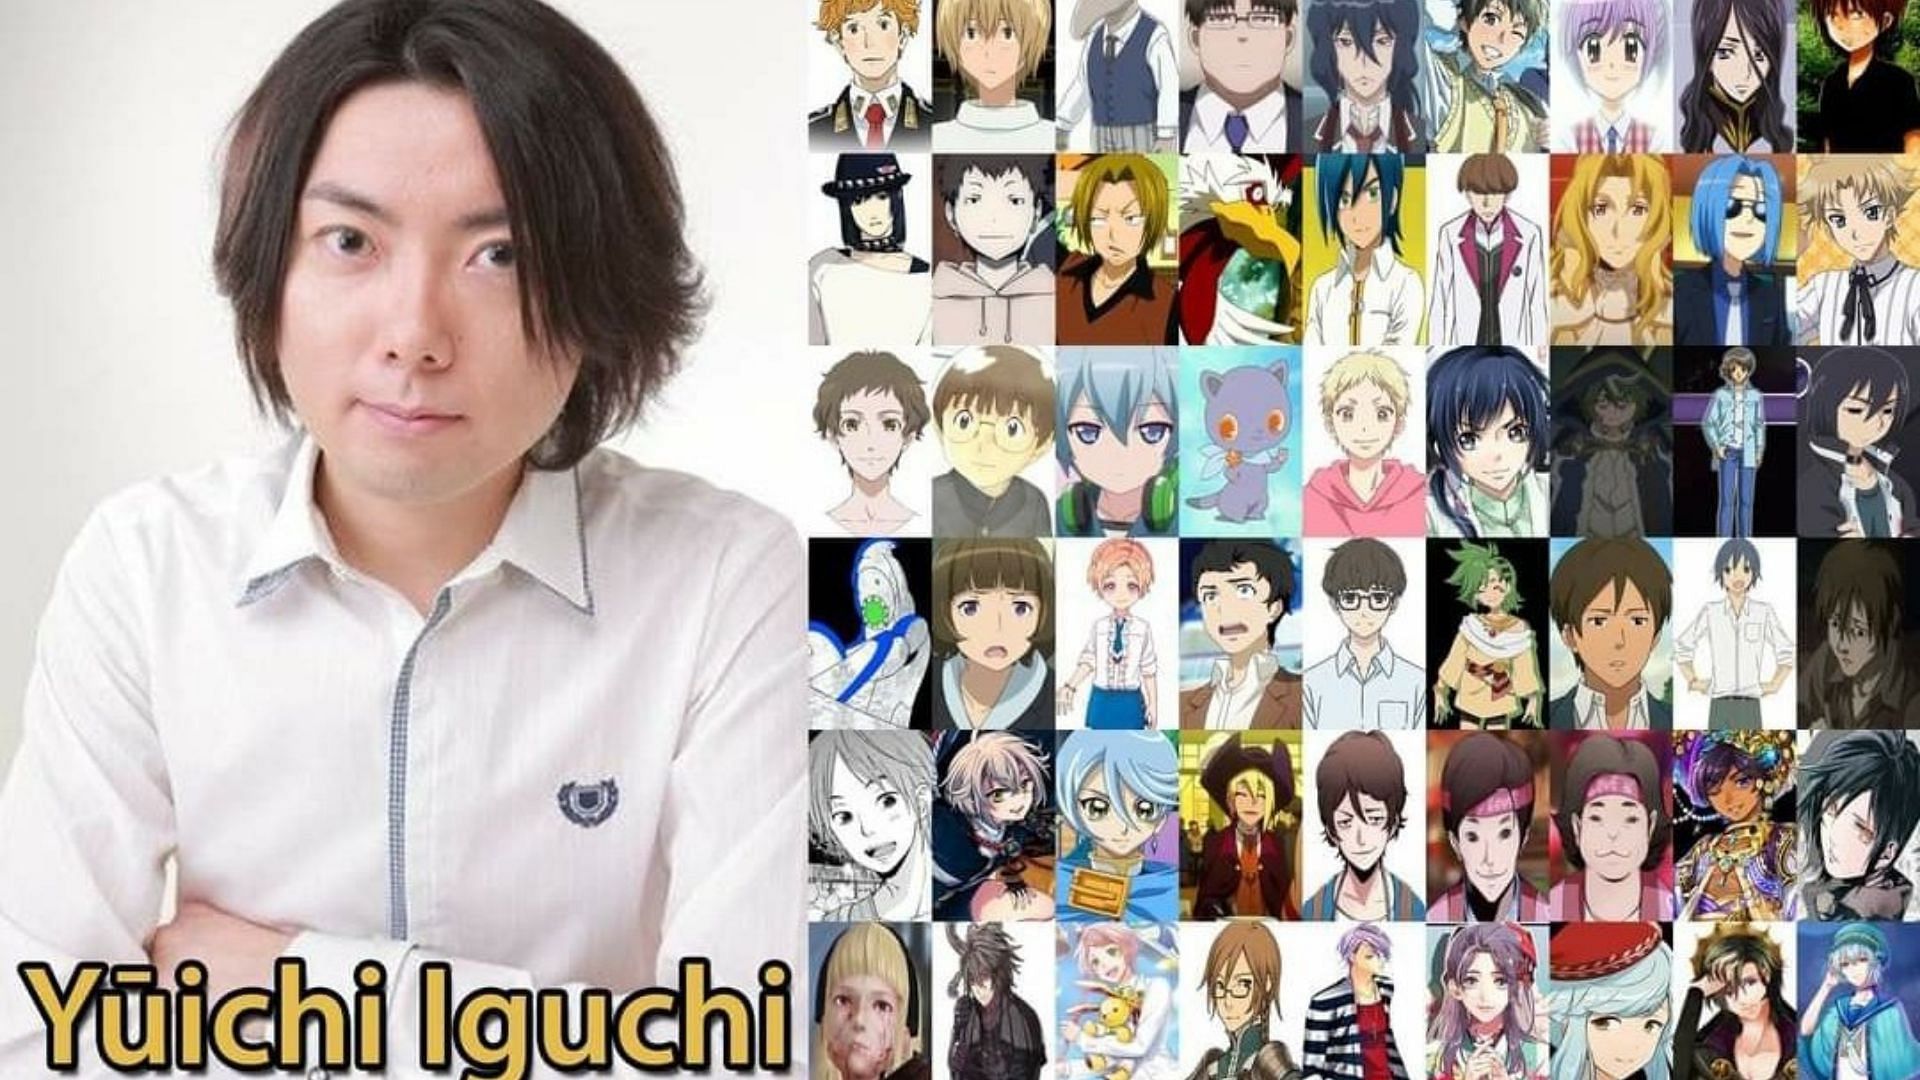 Xiao Japanese Voice Actor In Anime Roles [Yoshitsugu Matsuoka] (Kirito,  Sora) Genshin Impact - YouTube